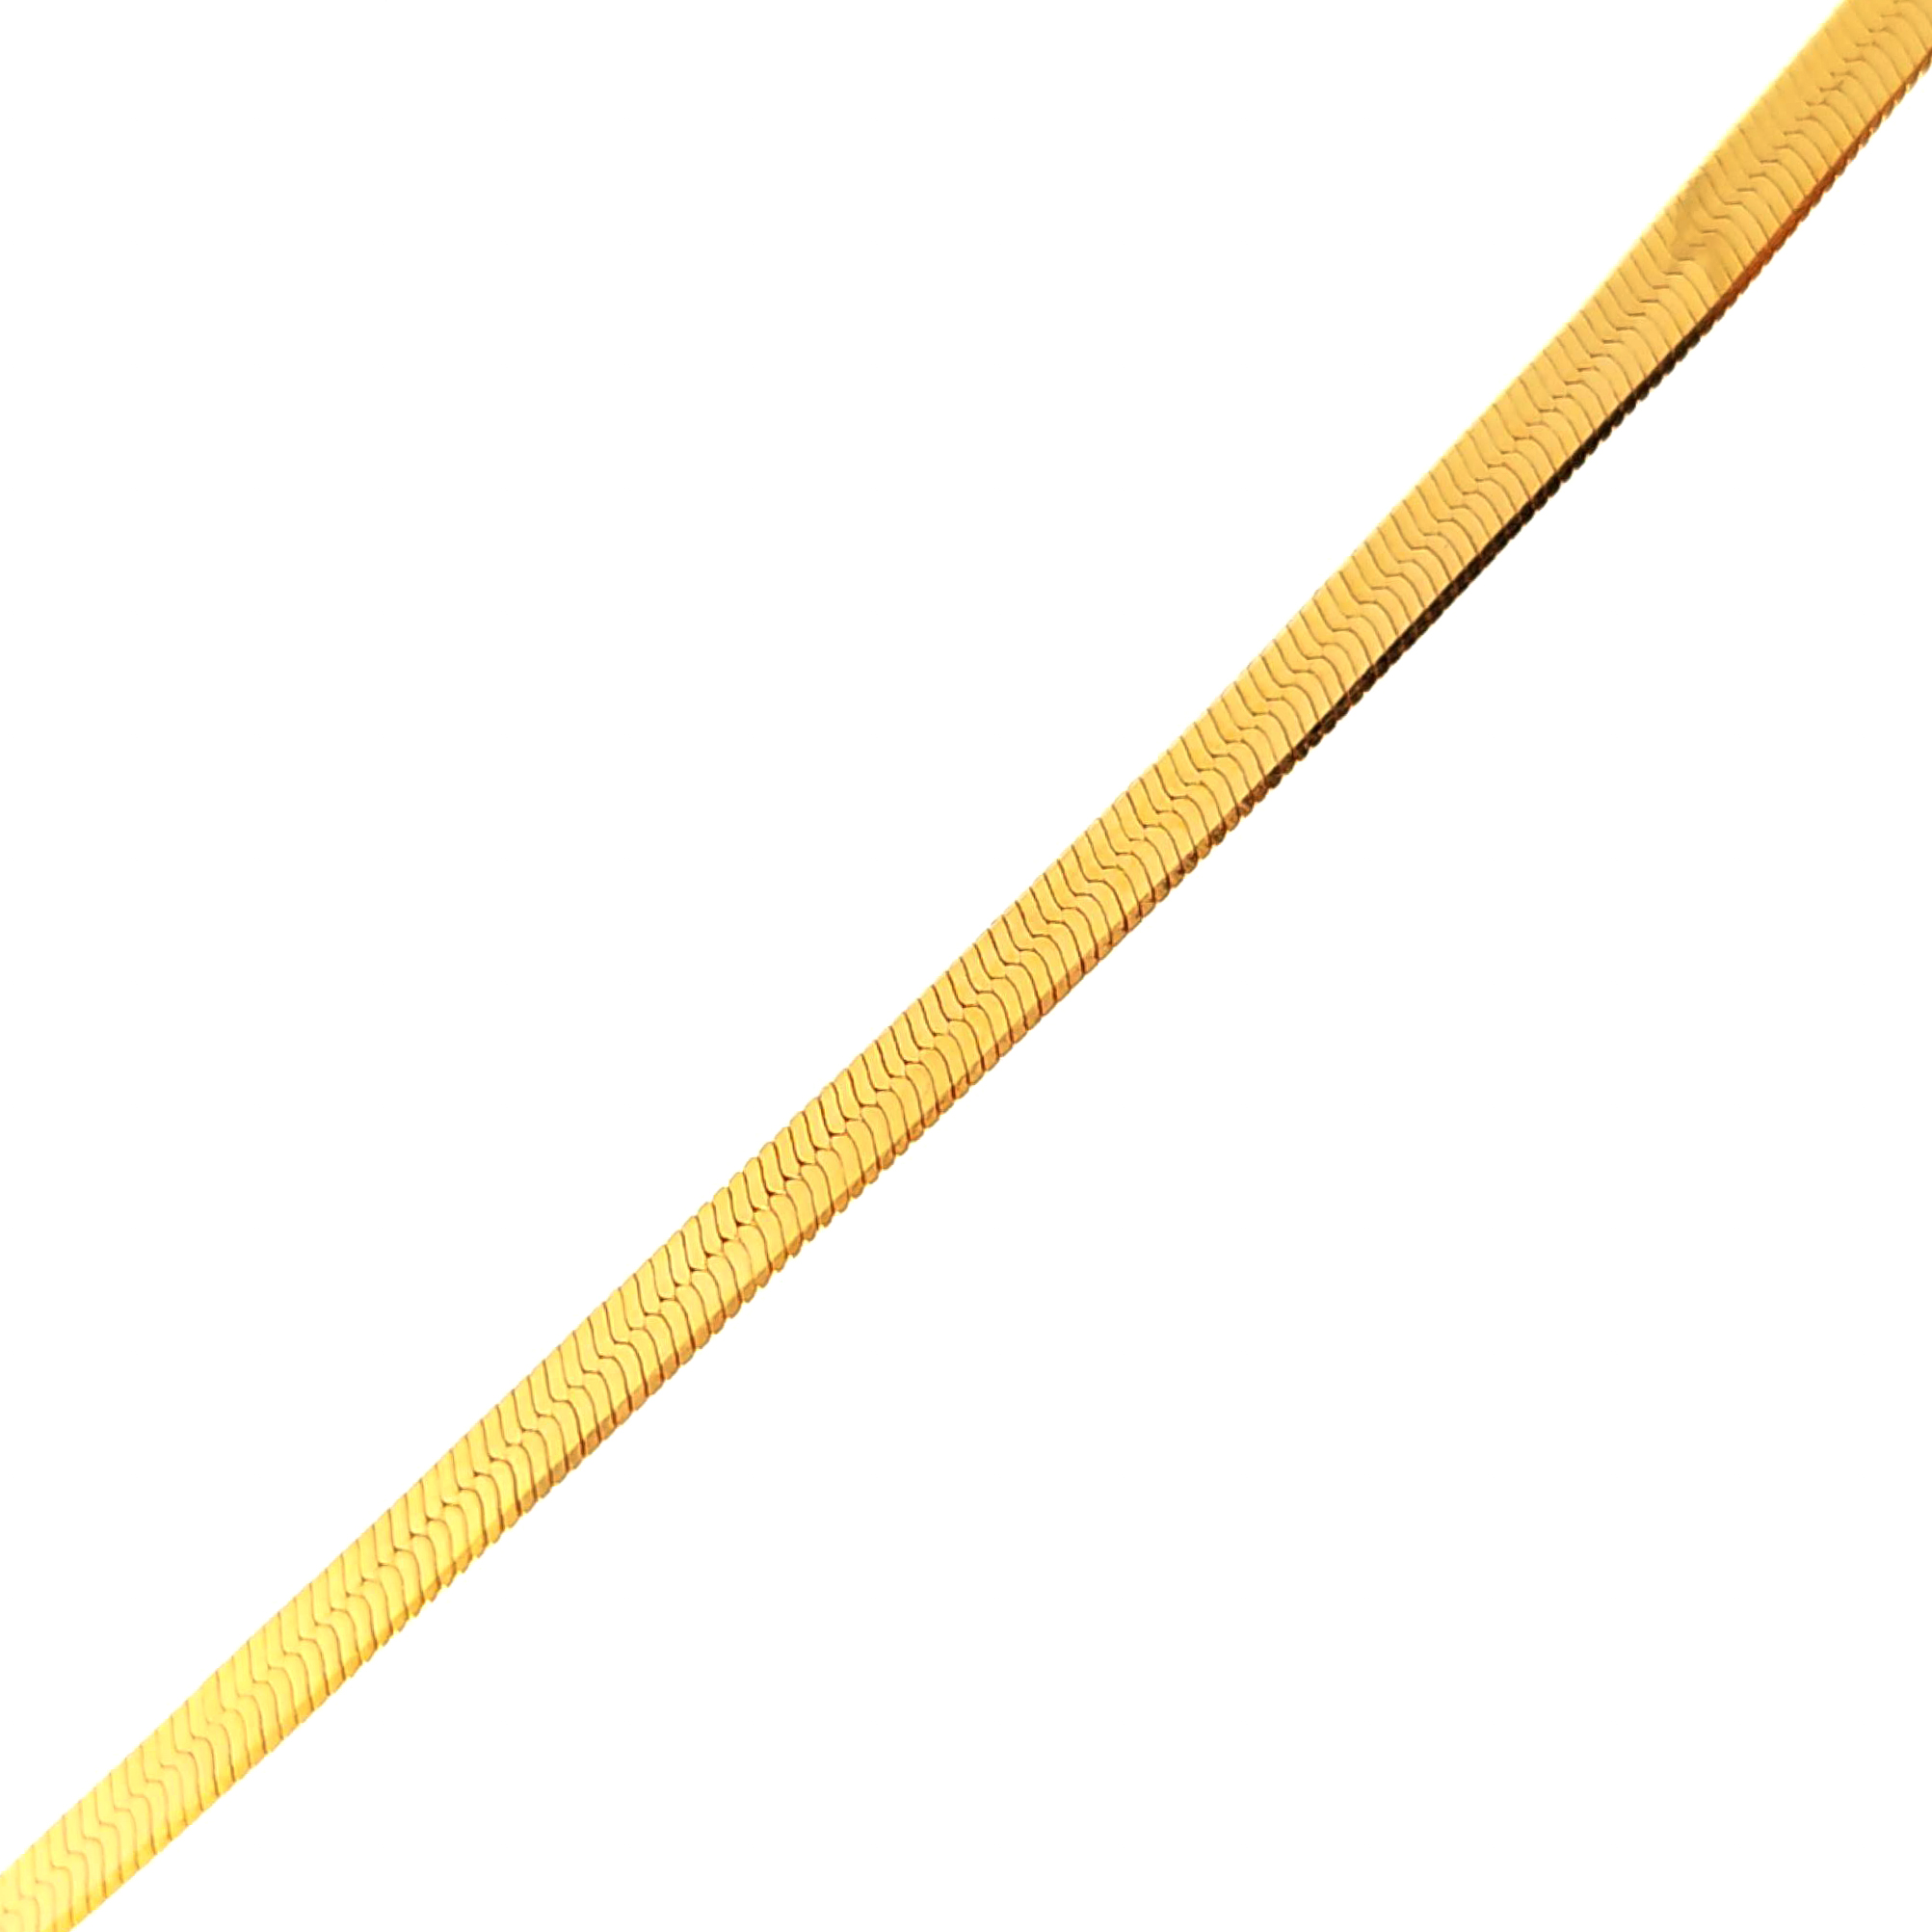 Cadena de oro amarillo 18k piel de serpiente de 2mm medida 45 cm, peso 6,96 gr 2